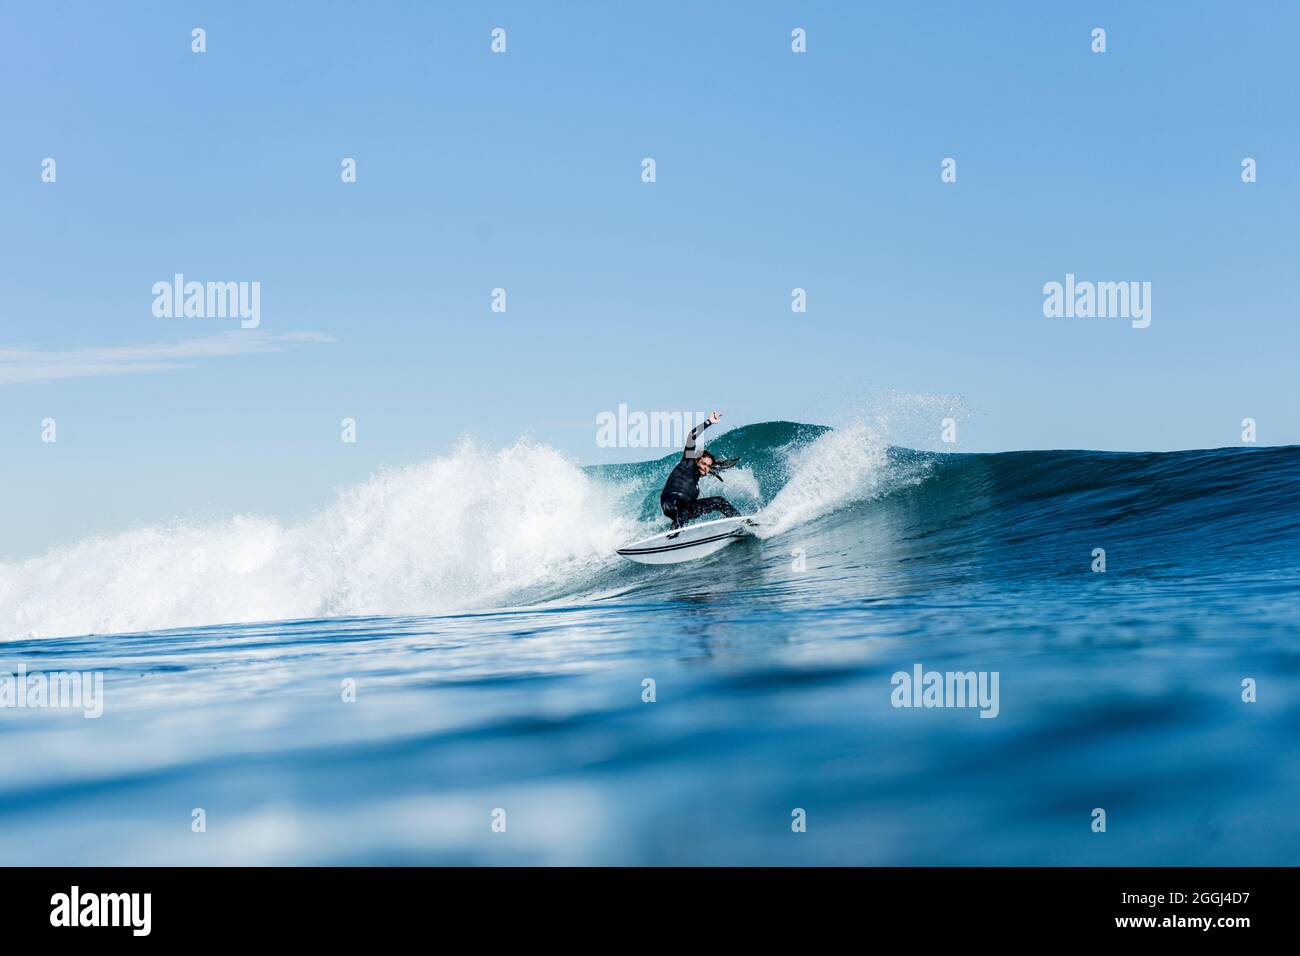 Mann surft und macht ein Surfmanöver auf einer Welle im Meer Stockfoto